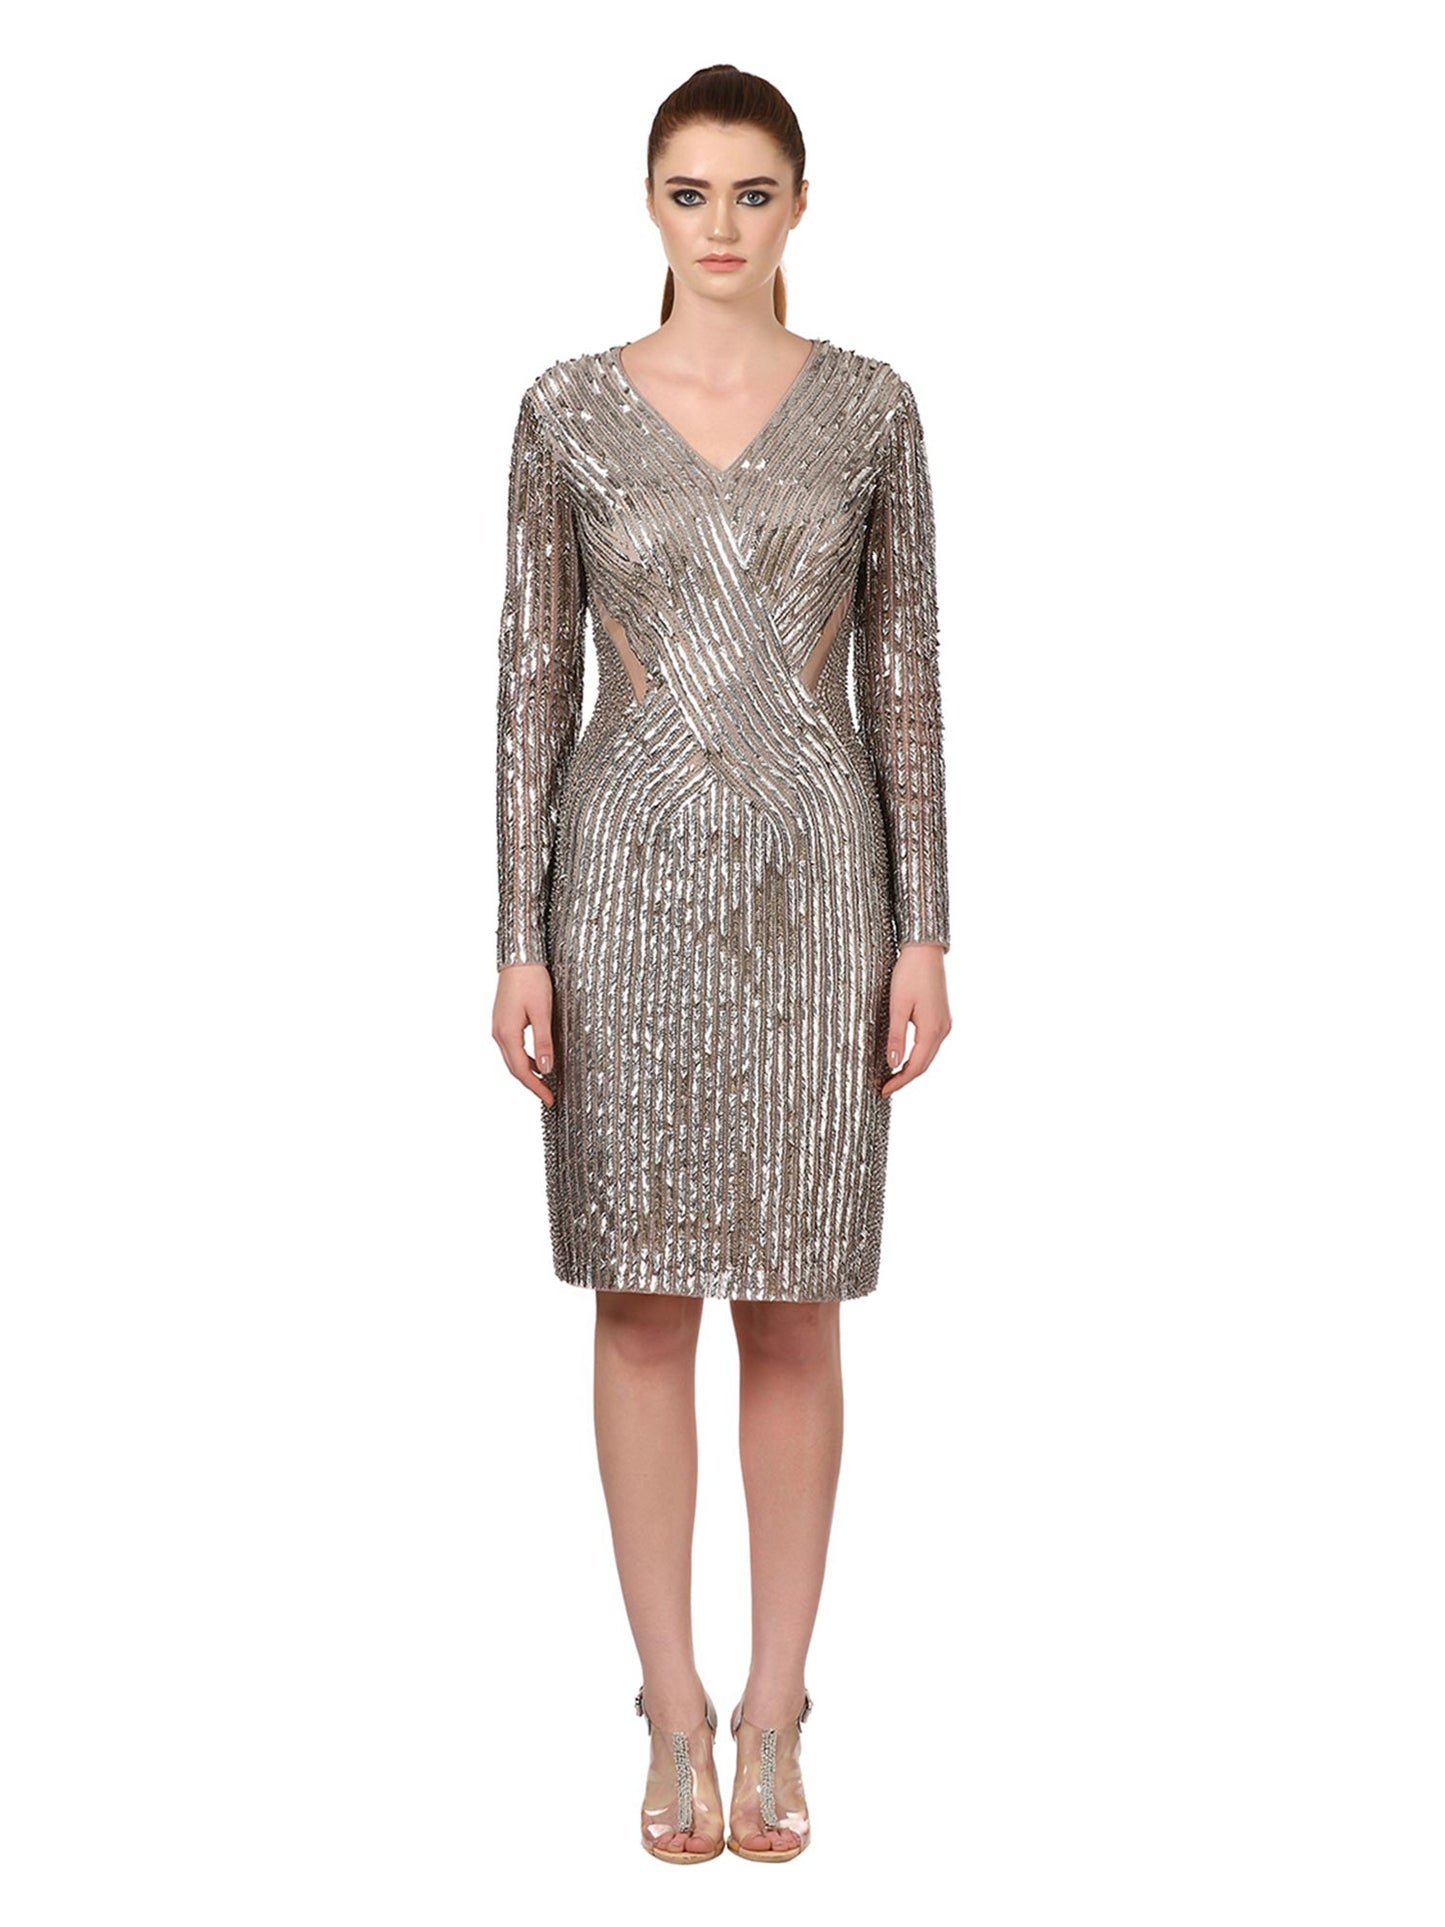 Silver Embellished Short Dress